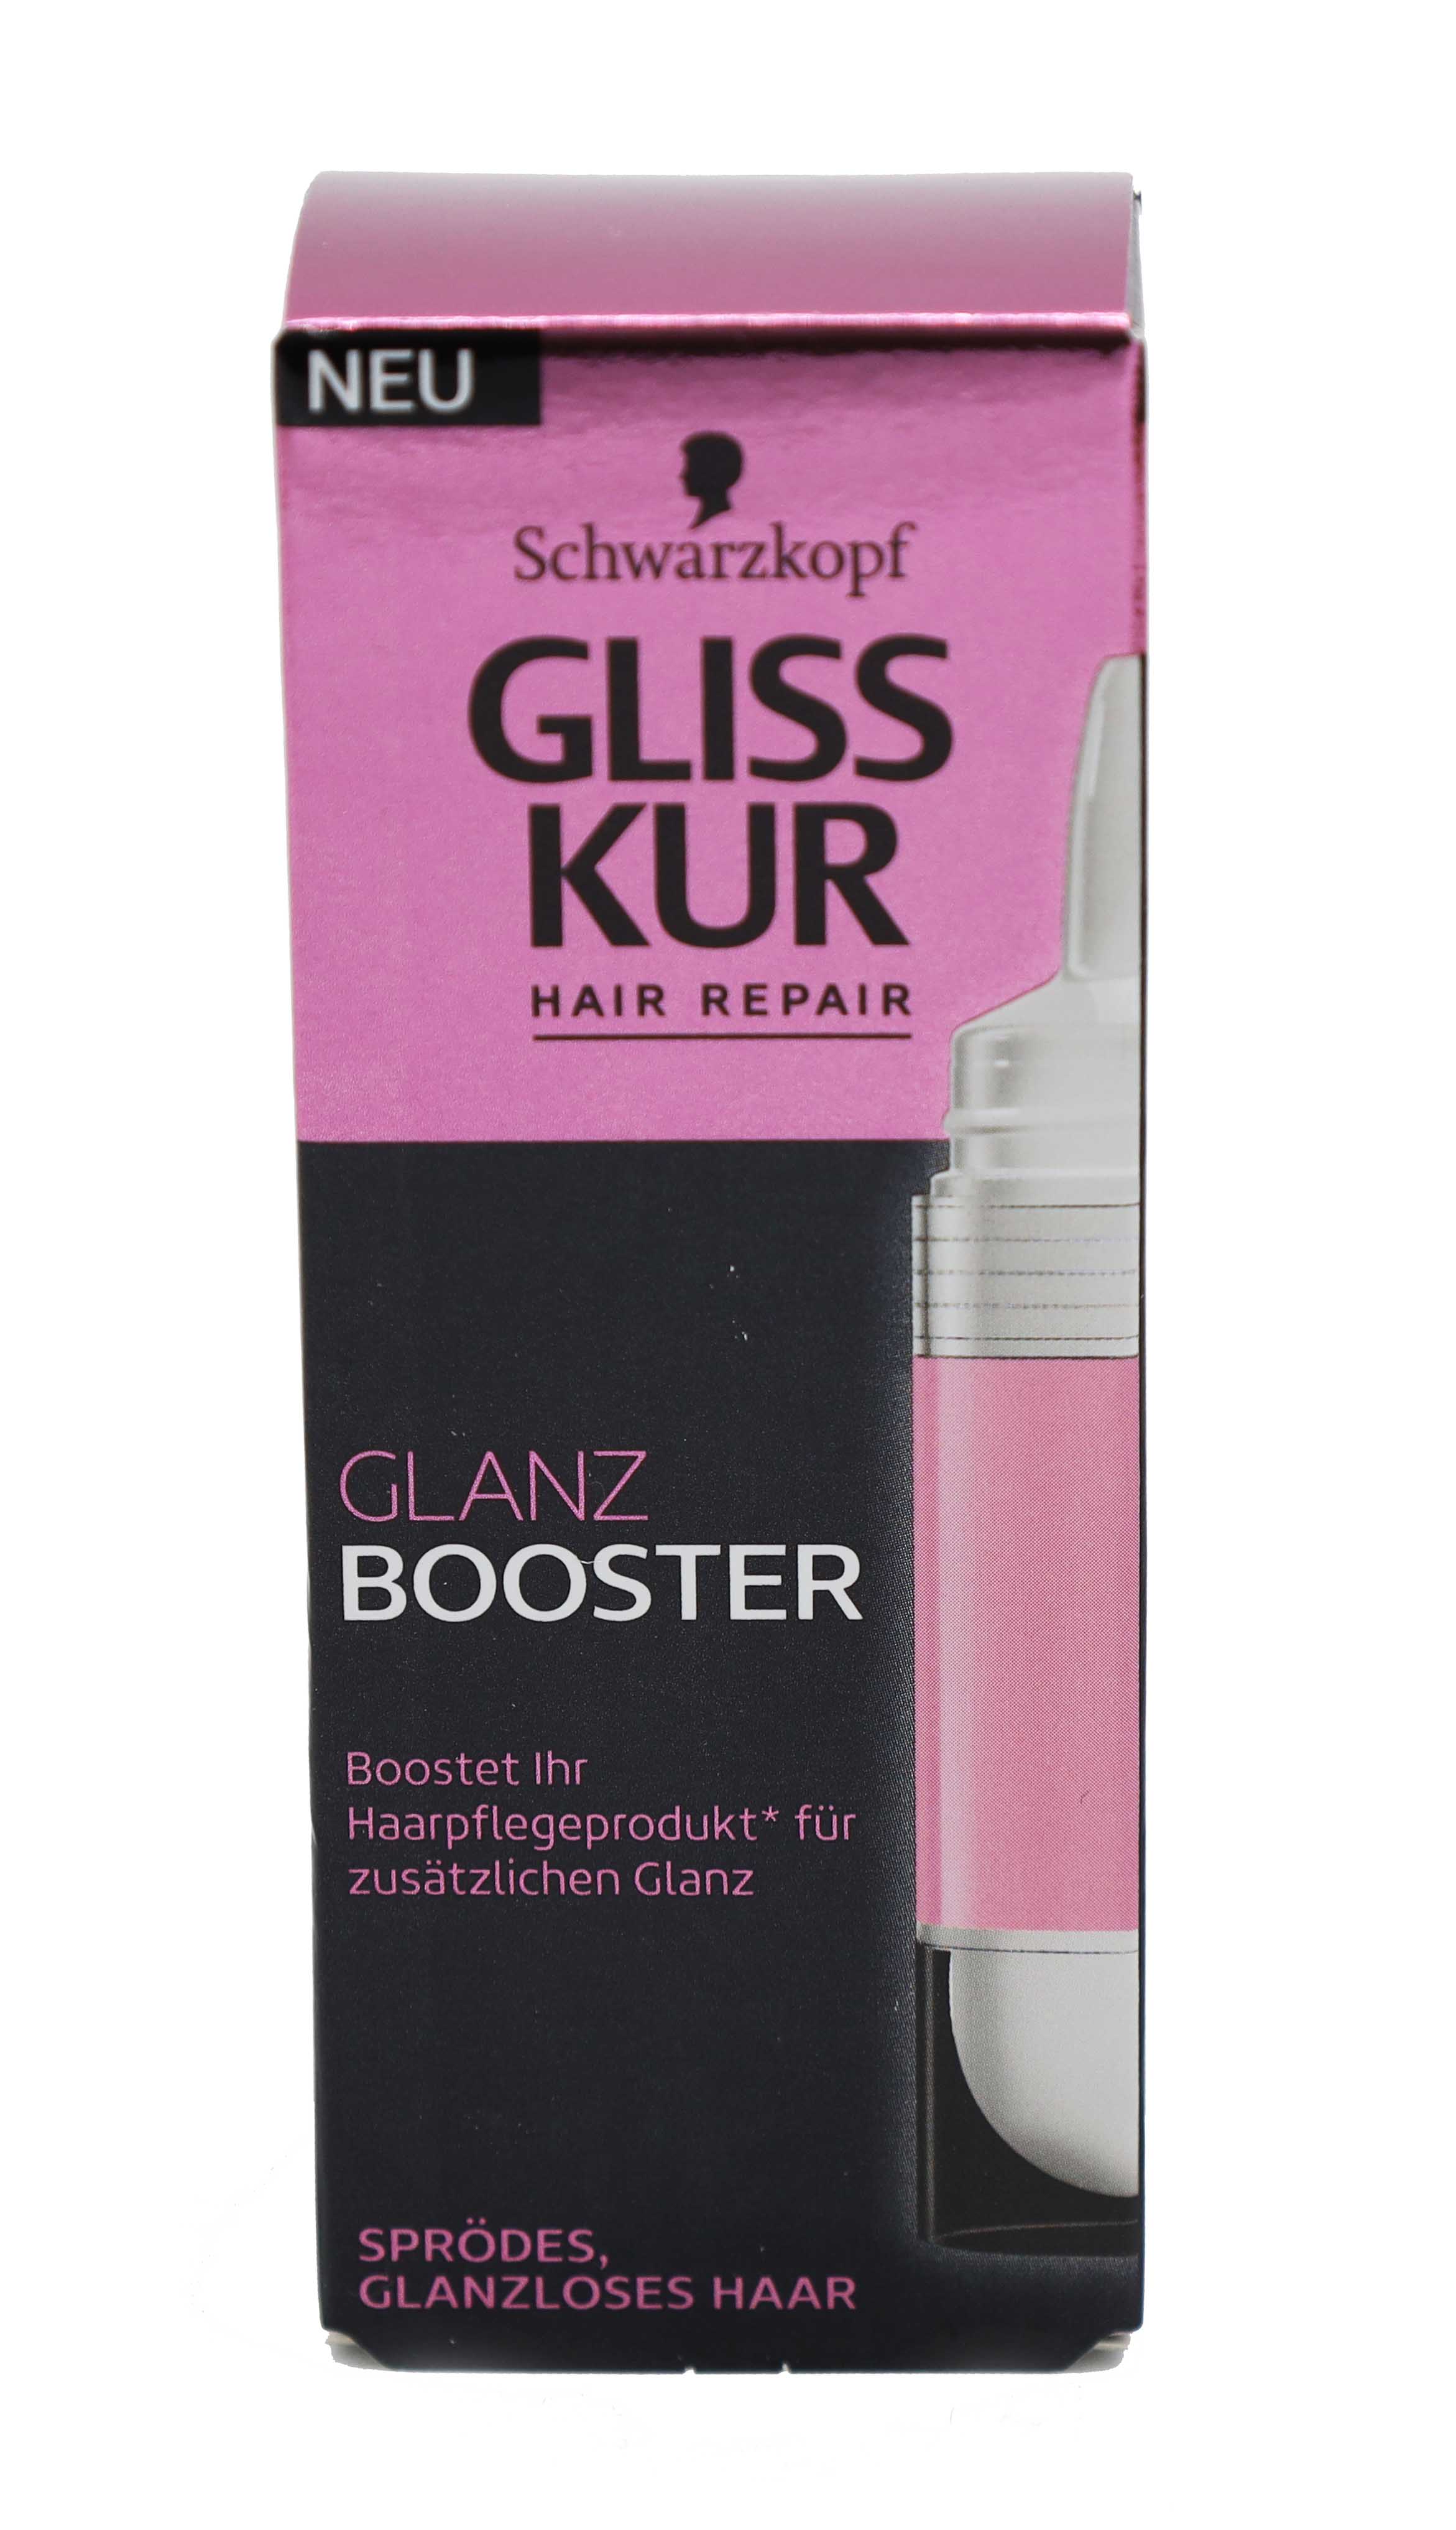 Gliss Kur Hair Repair Glanz Booster 15ml